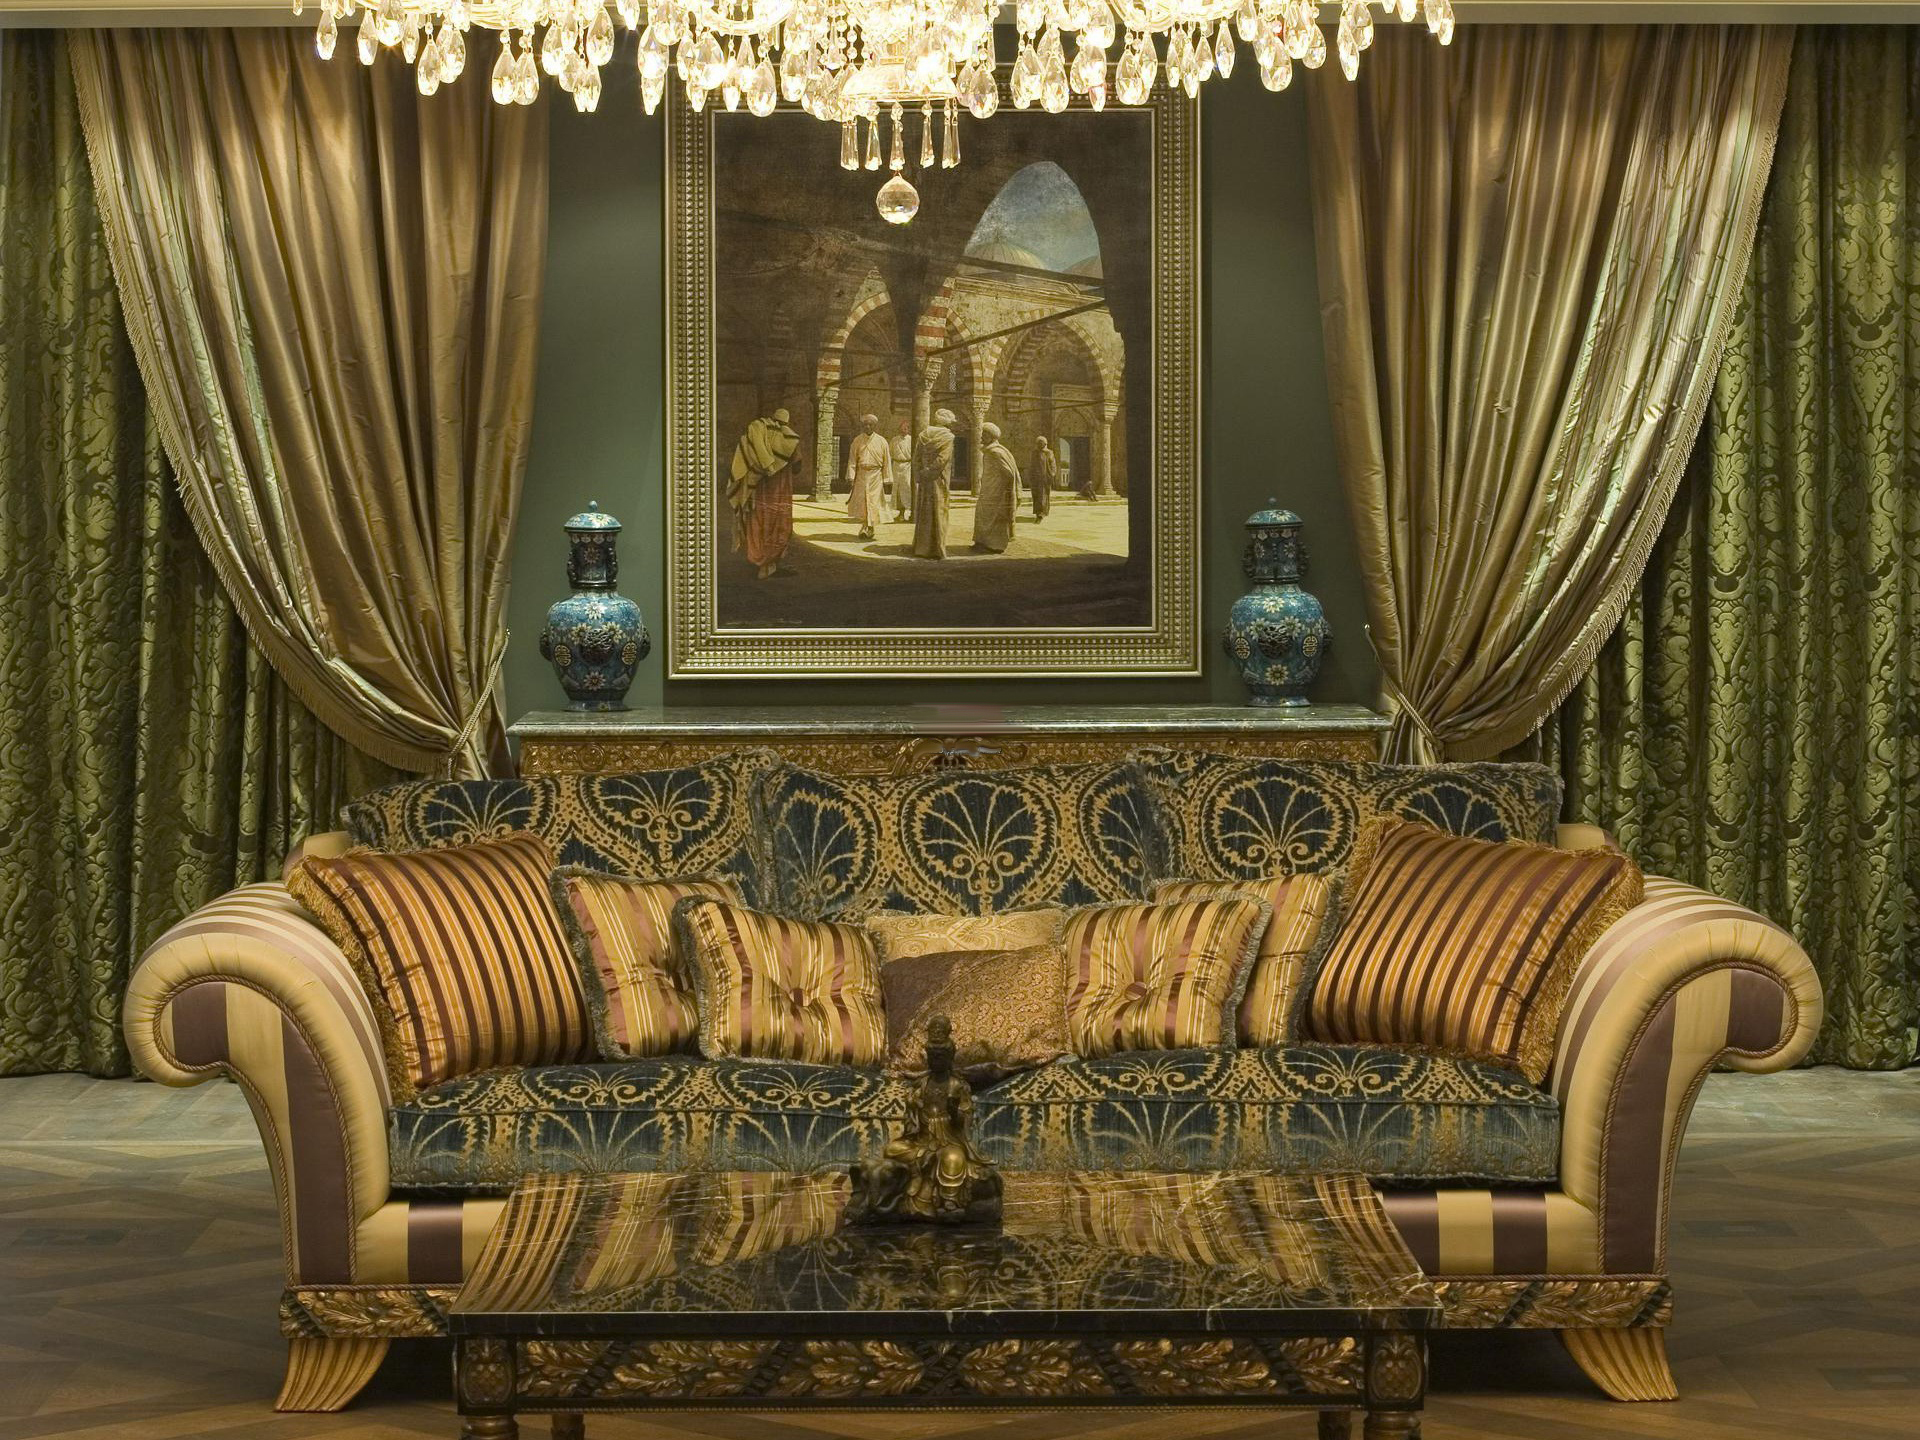 Массивная люстра из хрусталя в холле в стиле барокко.